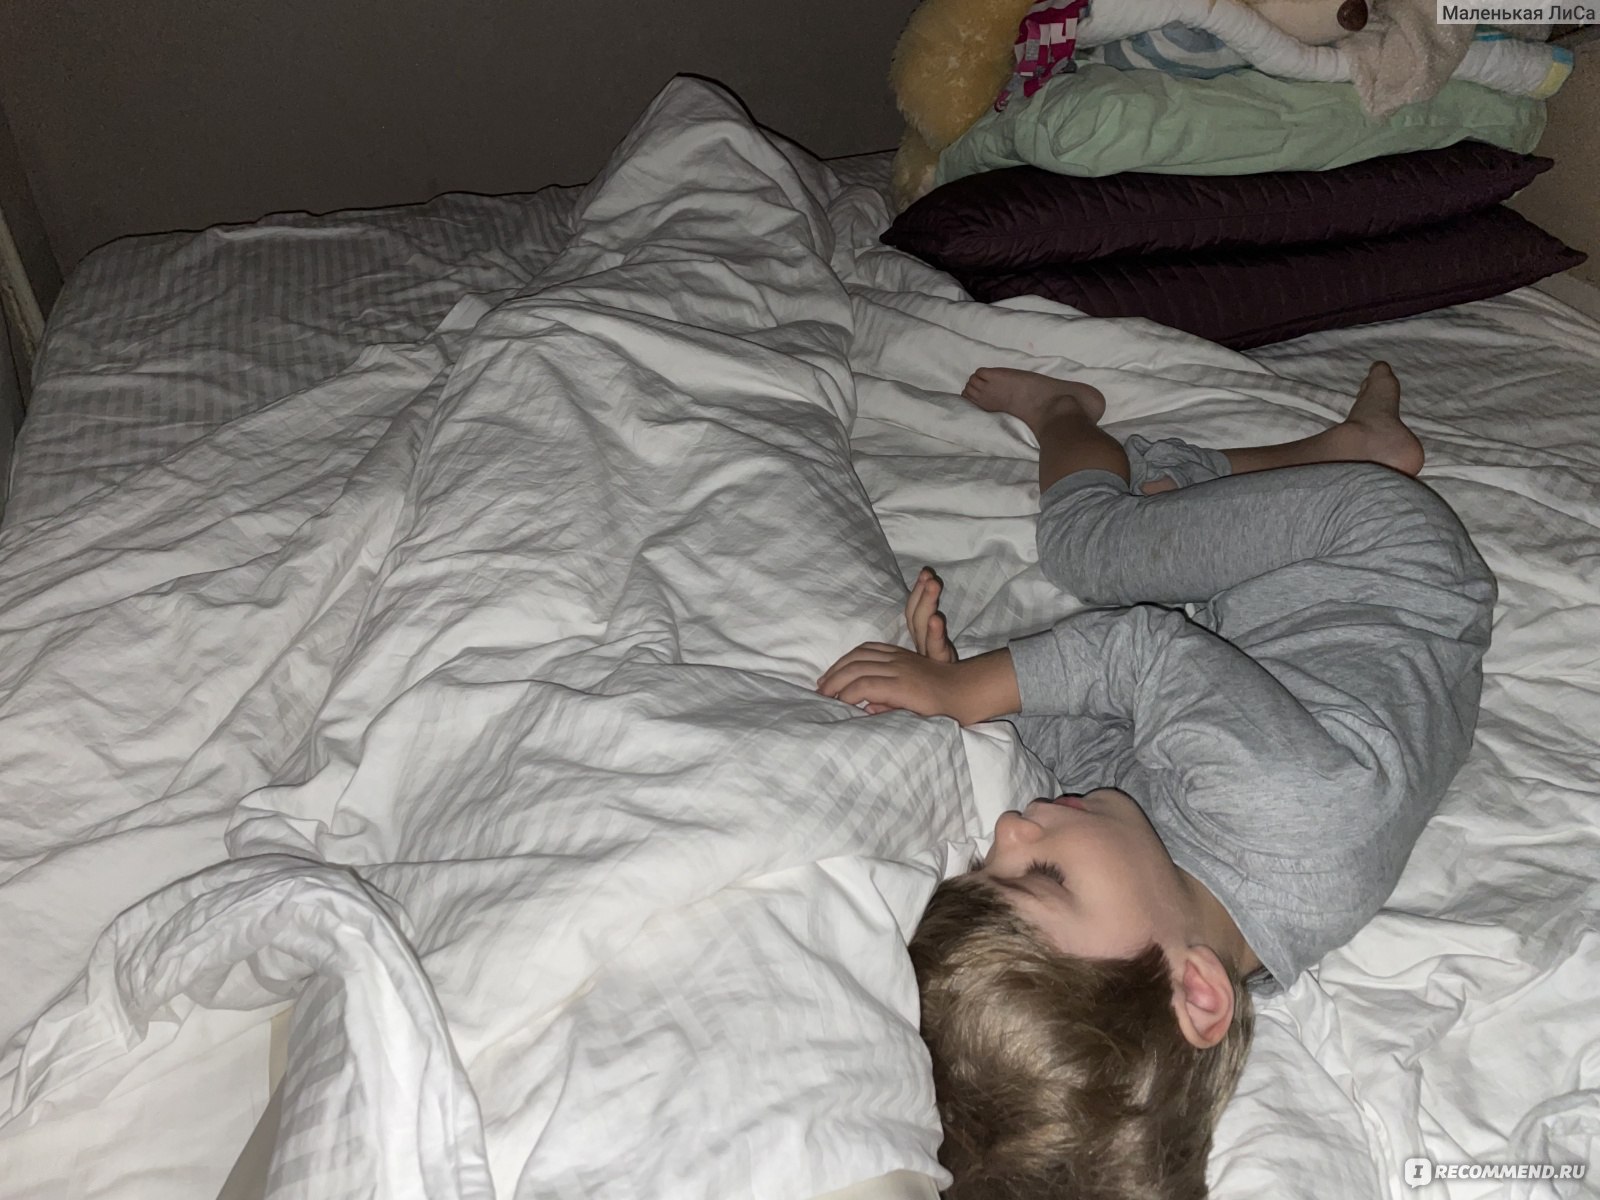 Ребенок 6 месяцев упал с кровати во сне